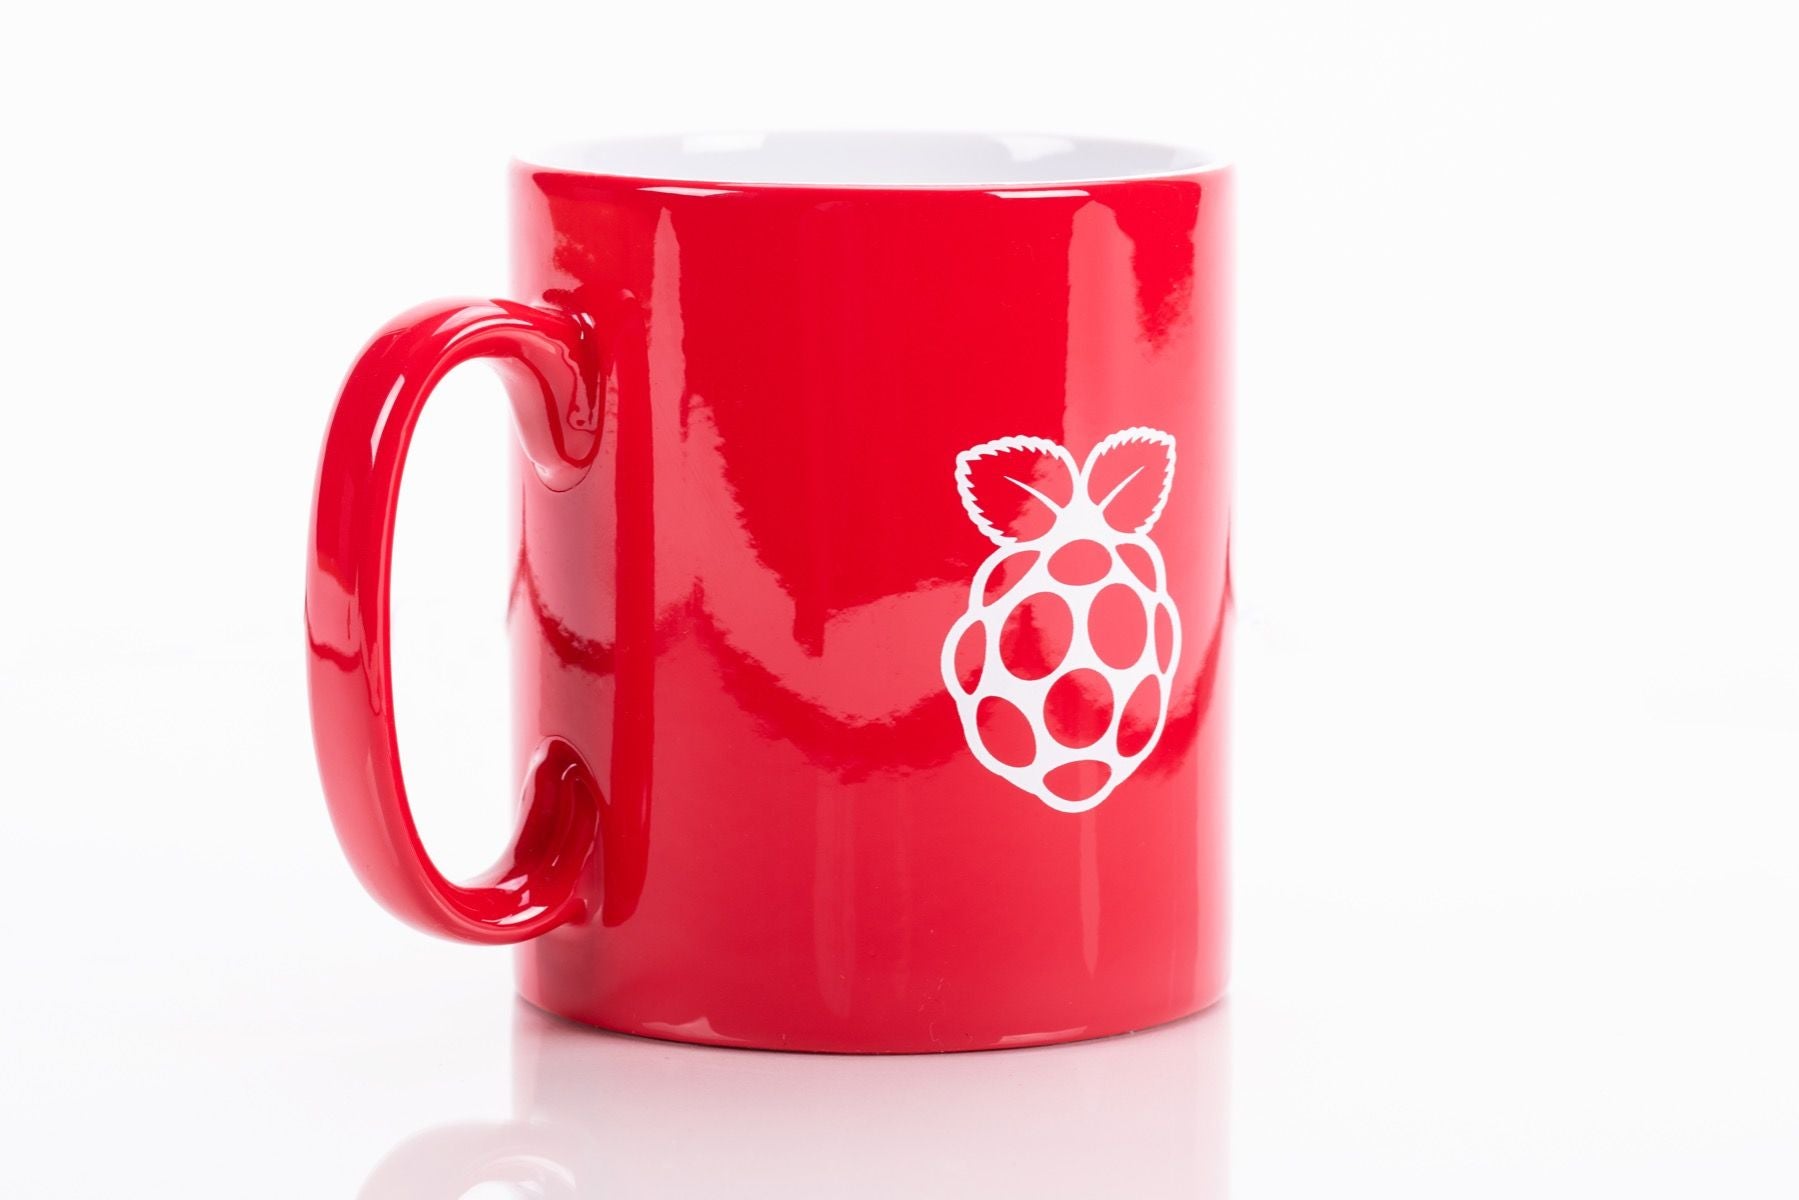 Raspberry Pi Official Red Ceramic Mug